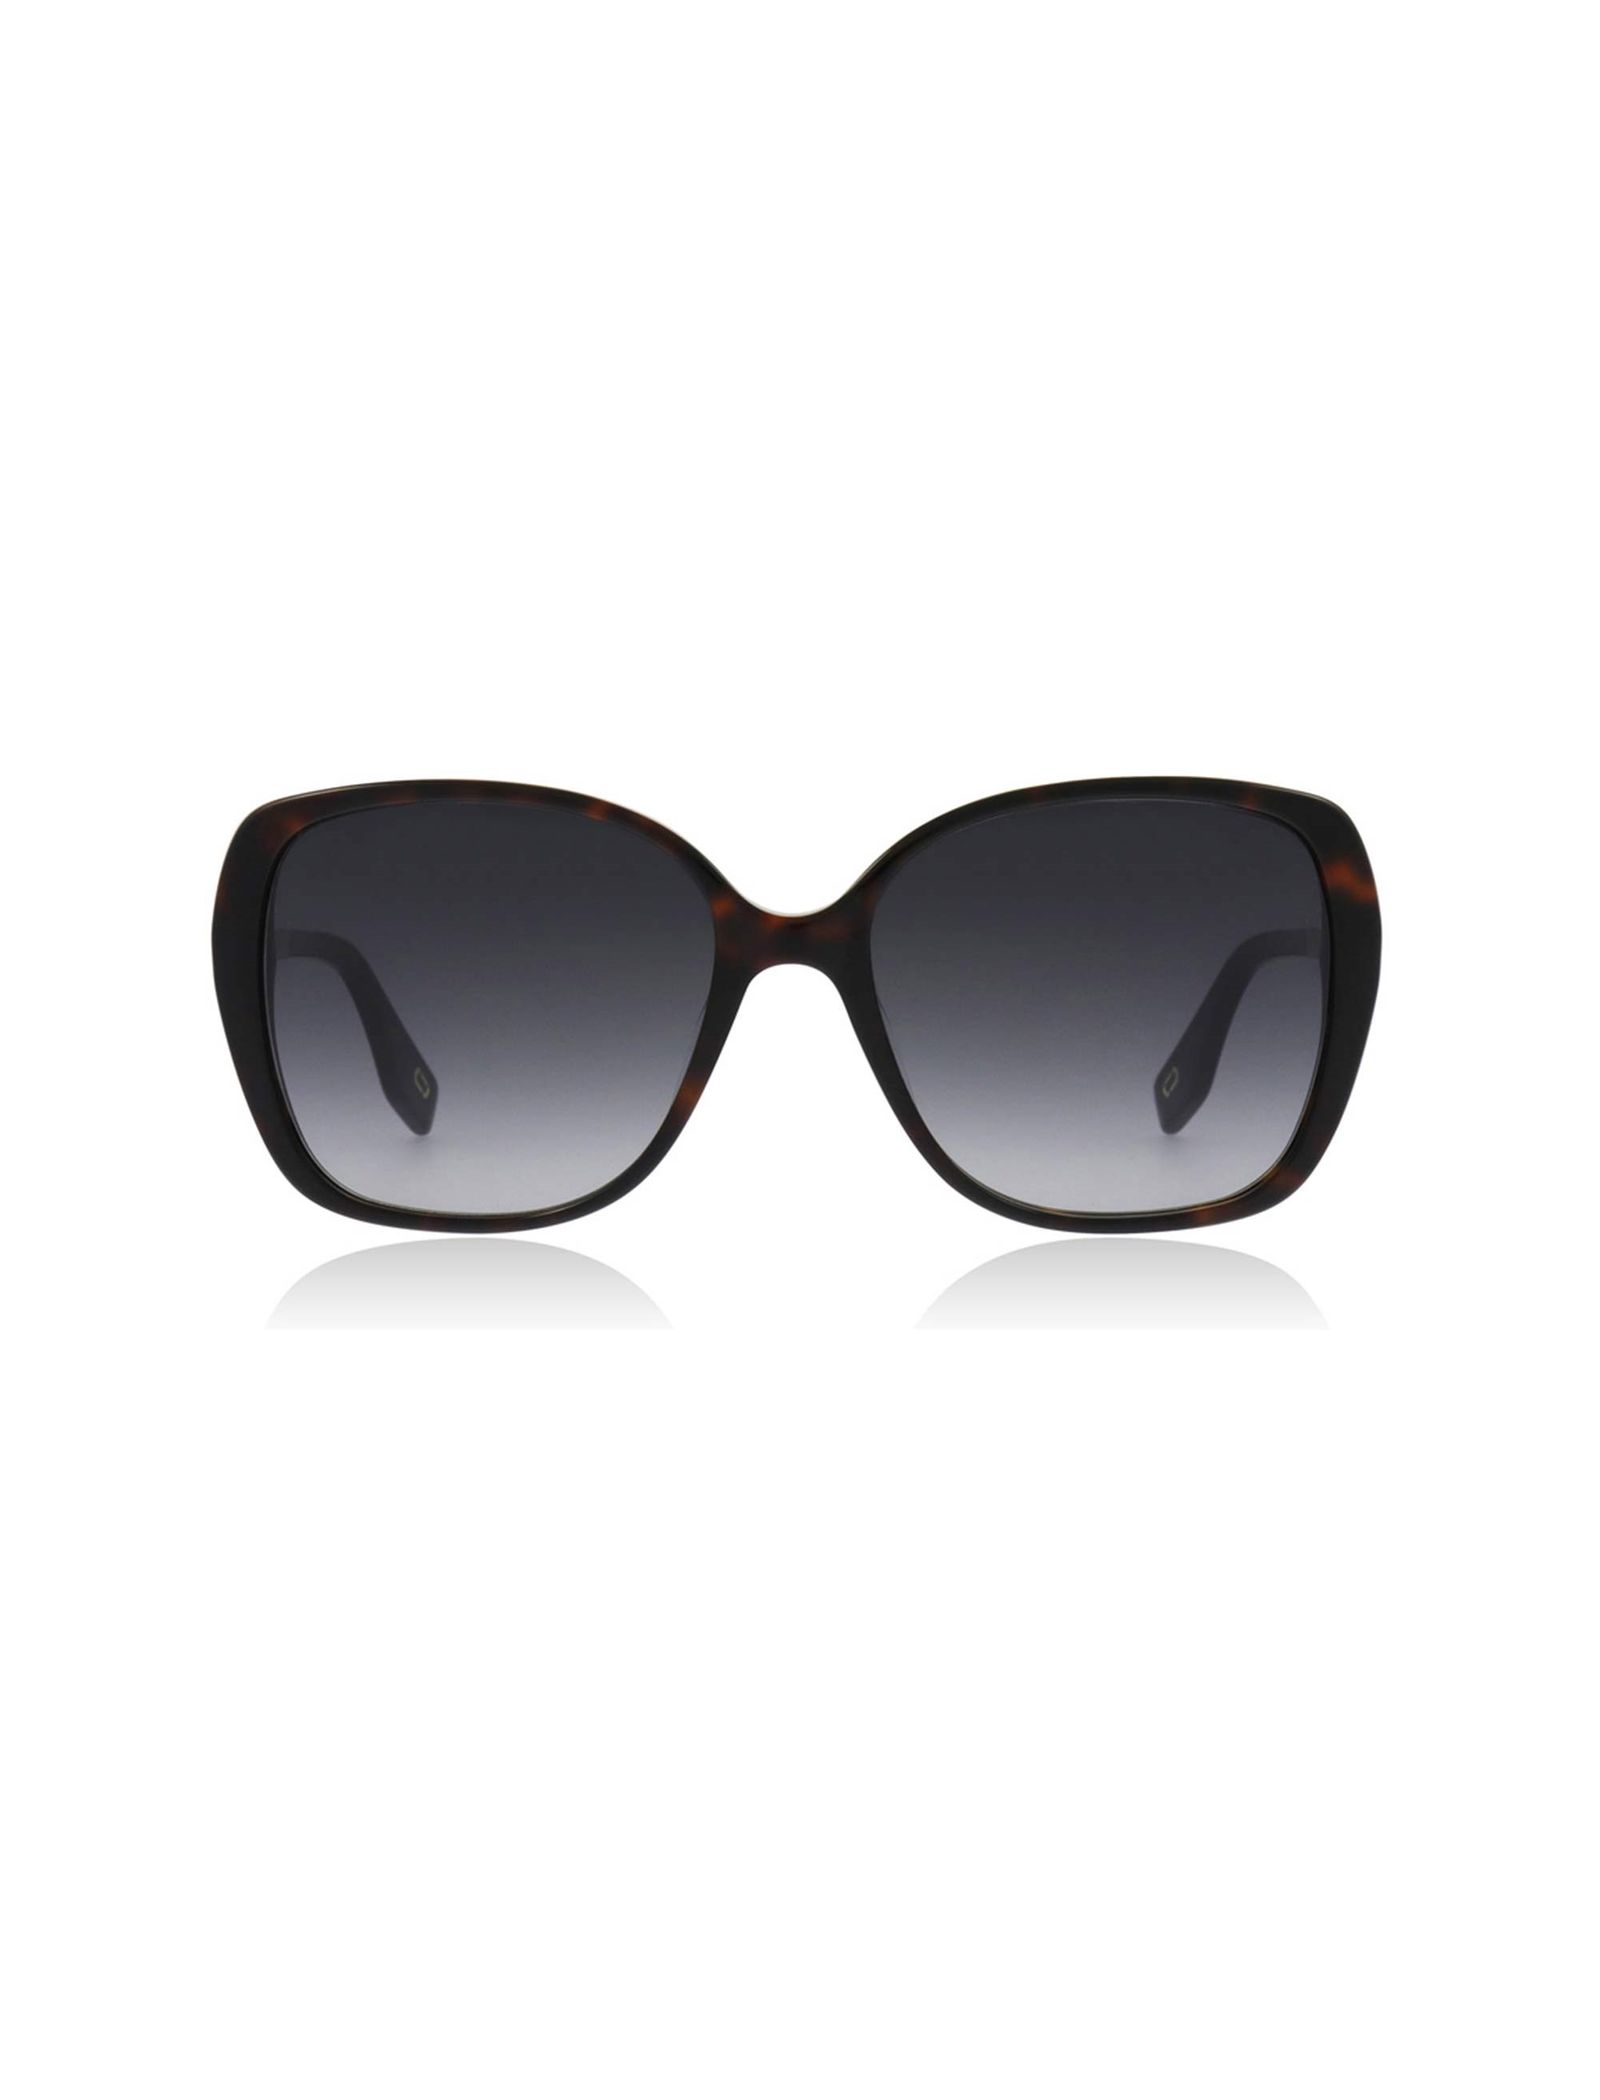 عینک آفتابی پروانه ای زنانه - مارک جکوبس - قهوه اي - 2